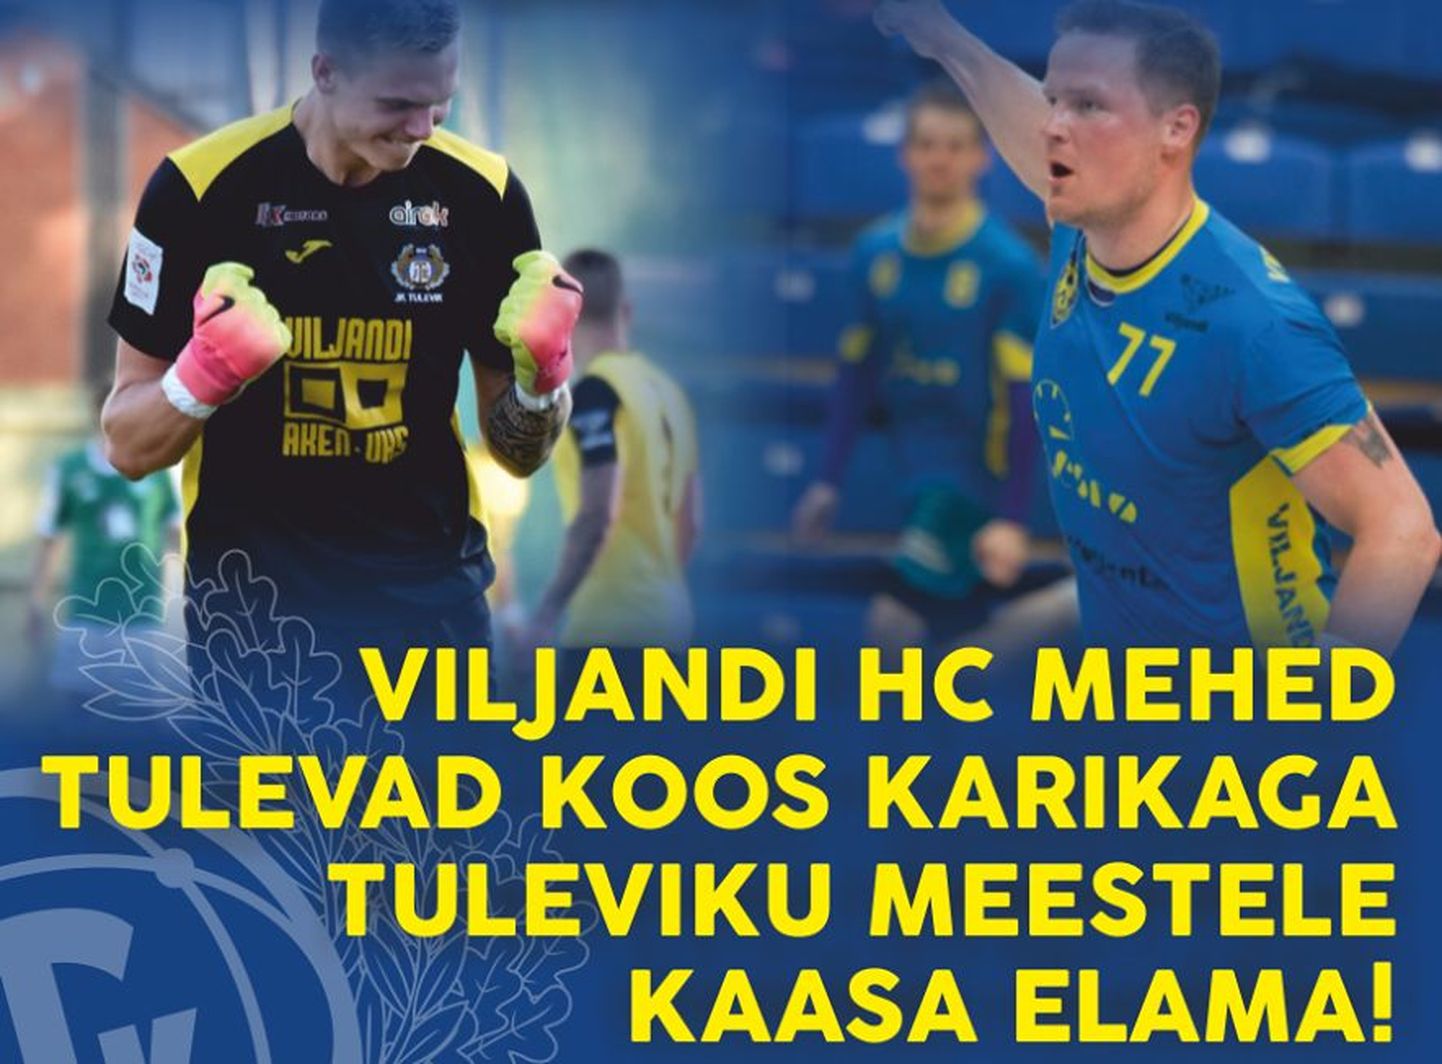 Viljandi käsipallimeeskond tuleb laupäeval Tuleviku meeskonnale kaasa elama ning kutsub kell 16 linnastaadionile ka kõiki viljandlasi.